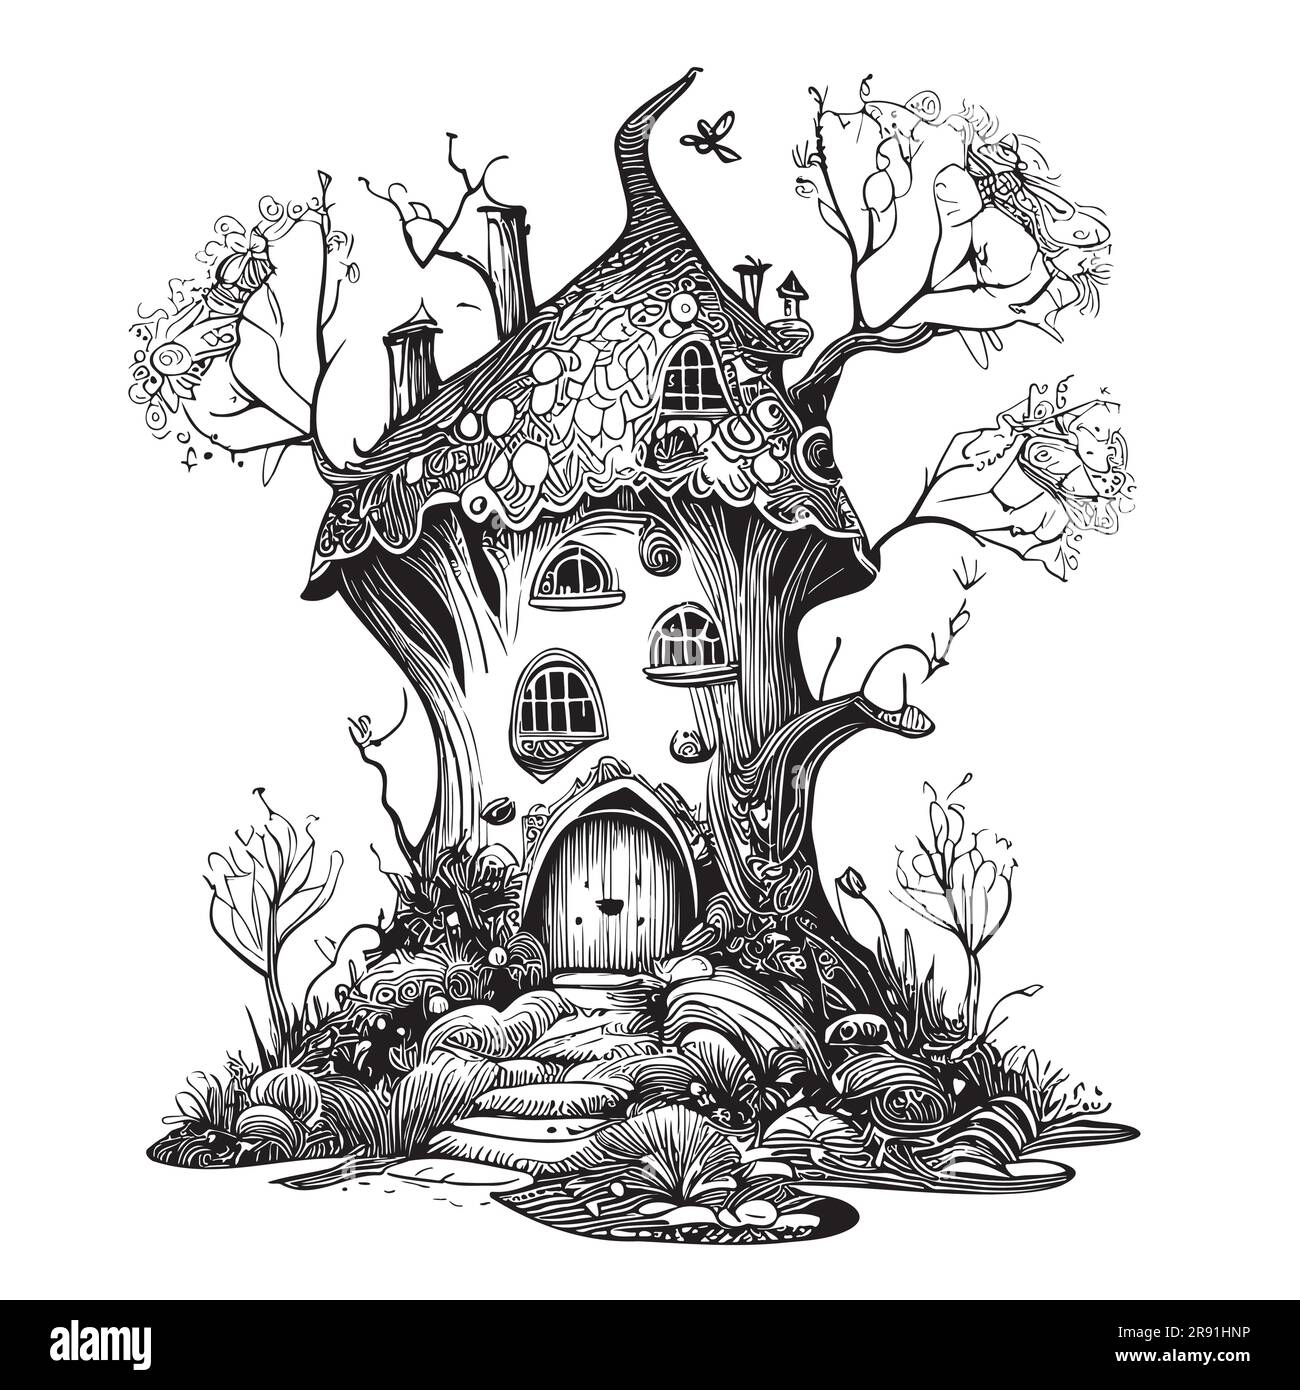 Croquis de la maison magique dessiné à la main dans l'illustration de conte de fées de style Doodle Illustration de Vecteur